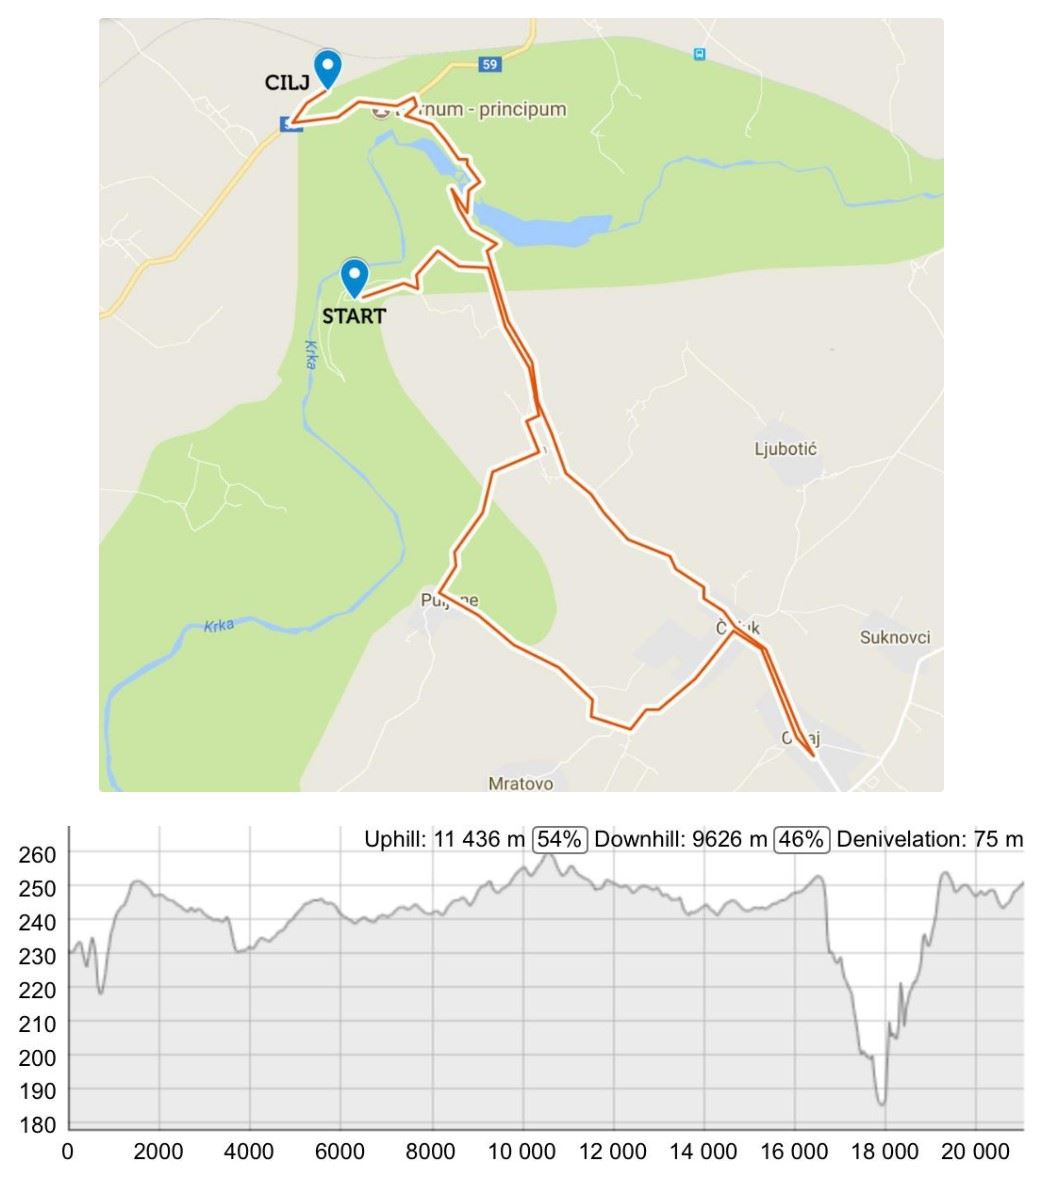 Krka Half Marathon MAPA DEL RECORRIDO DE